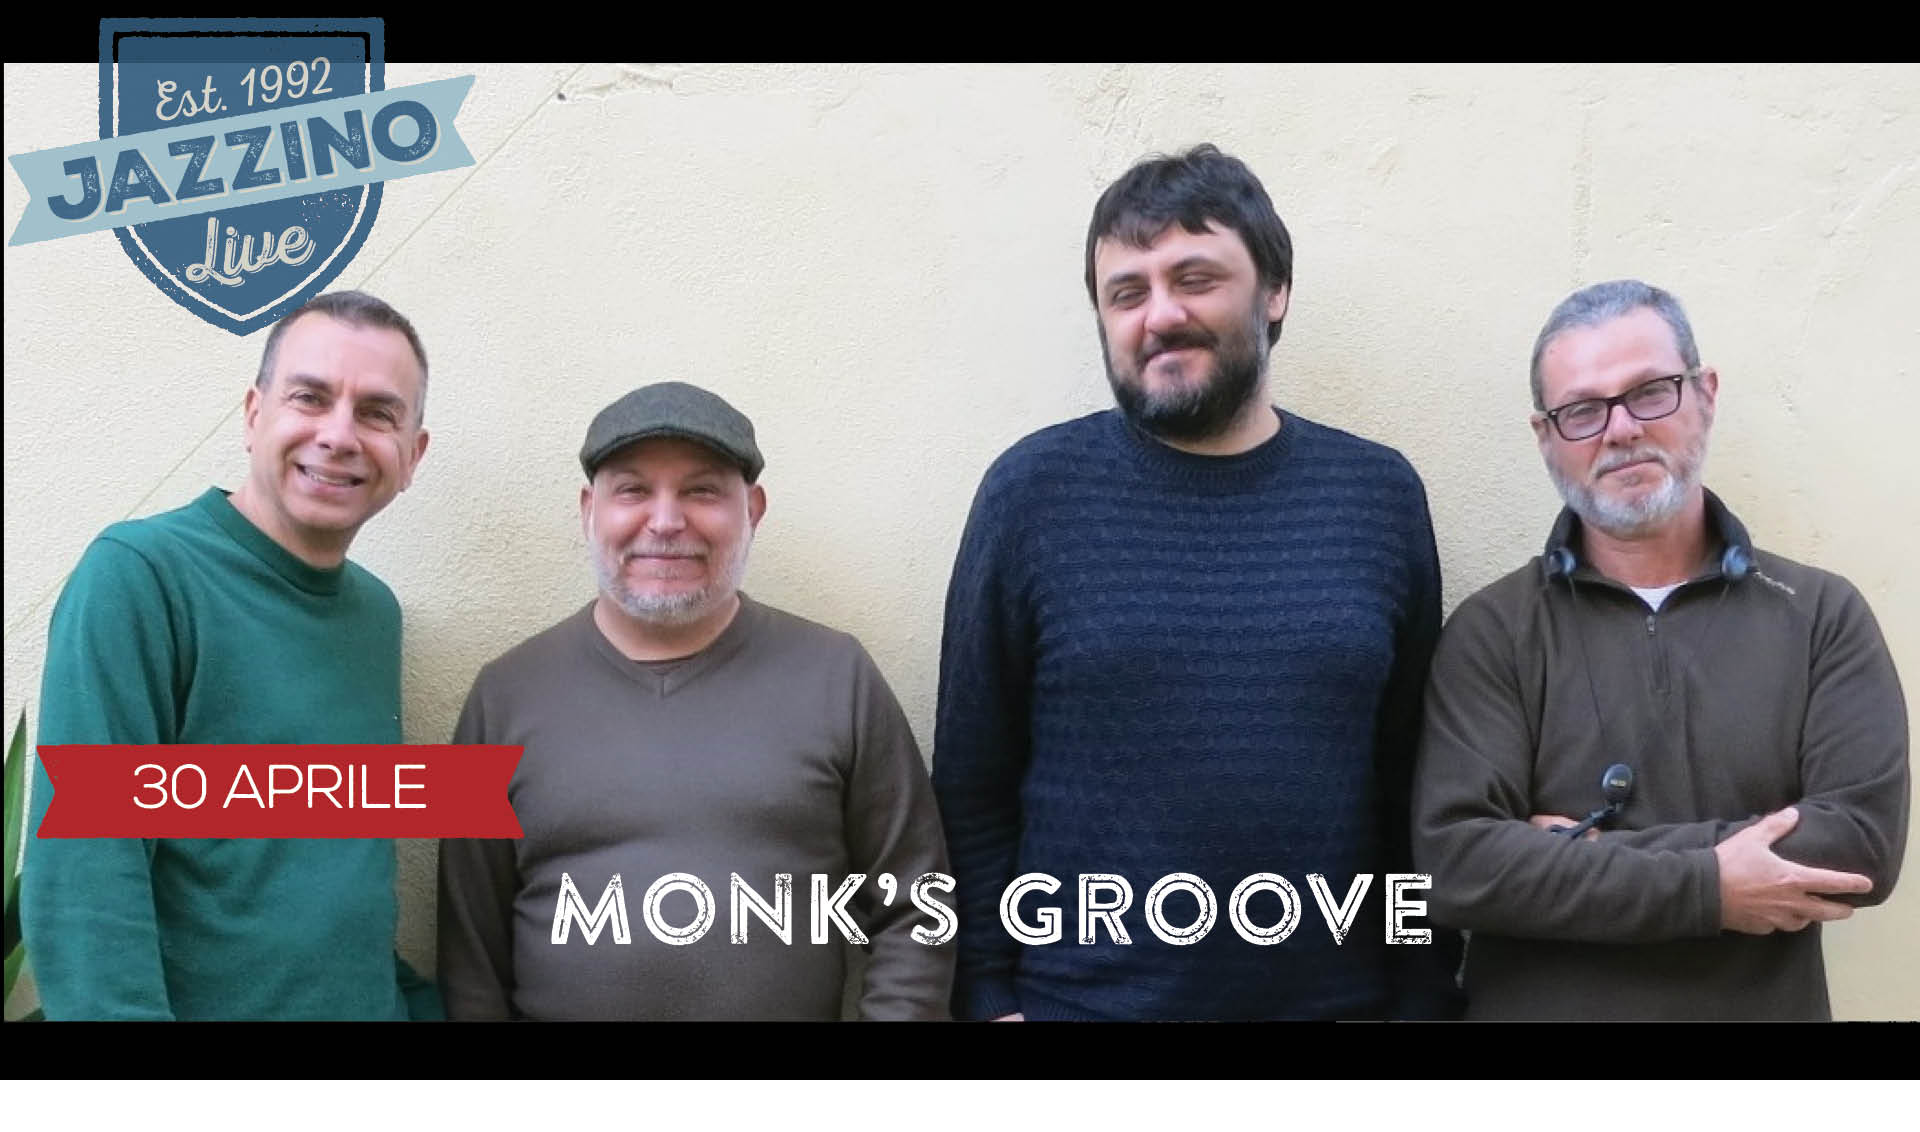 monk-s-groove-30-aprile-live-jazzino